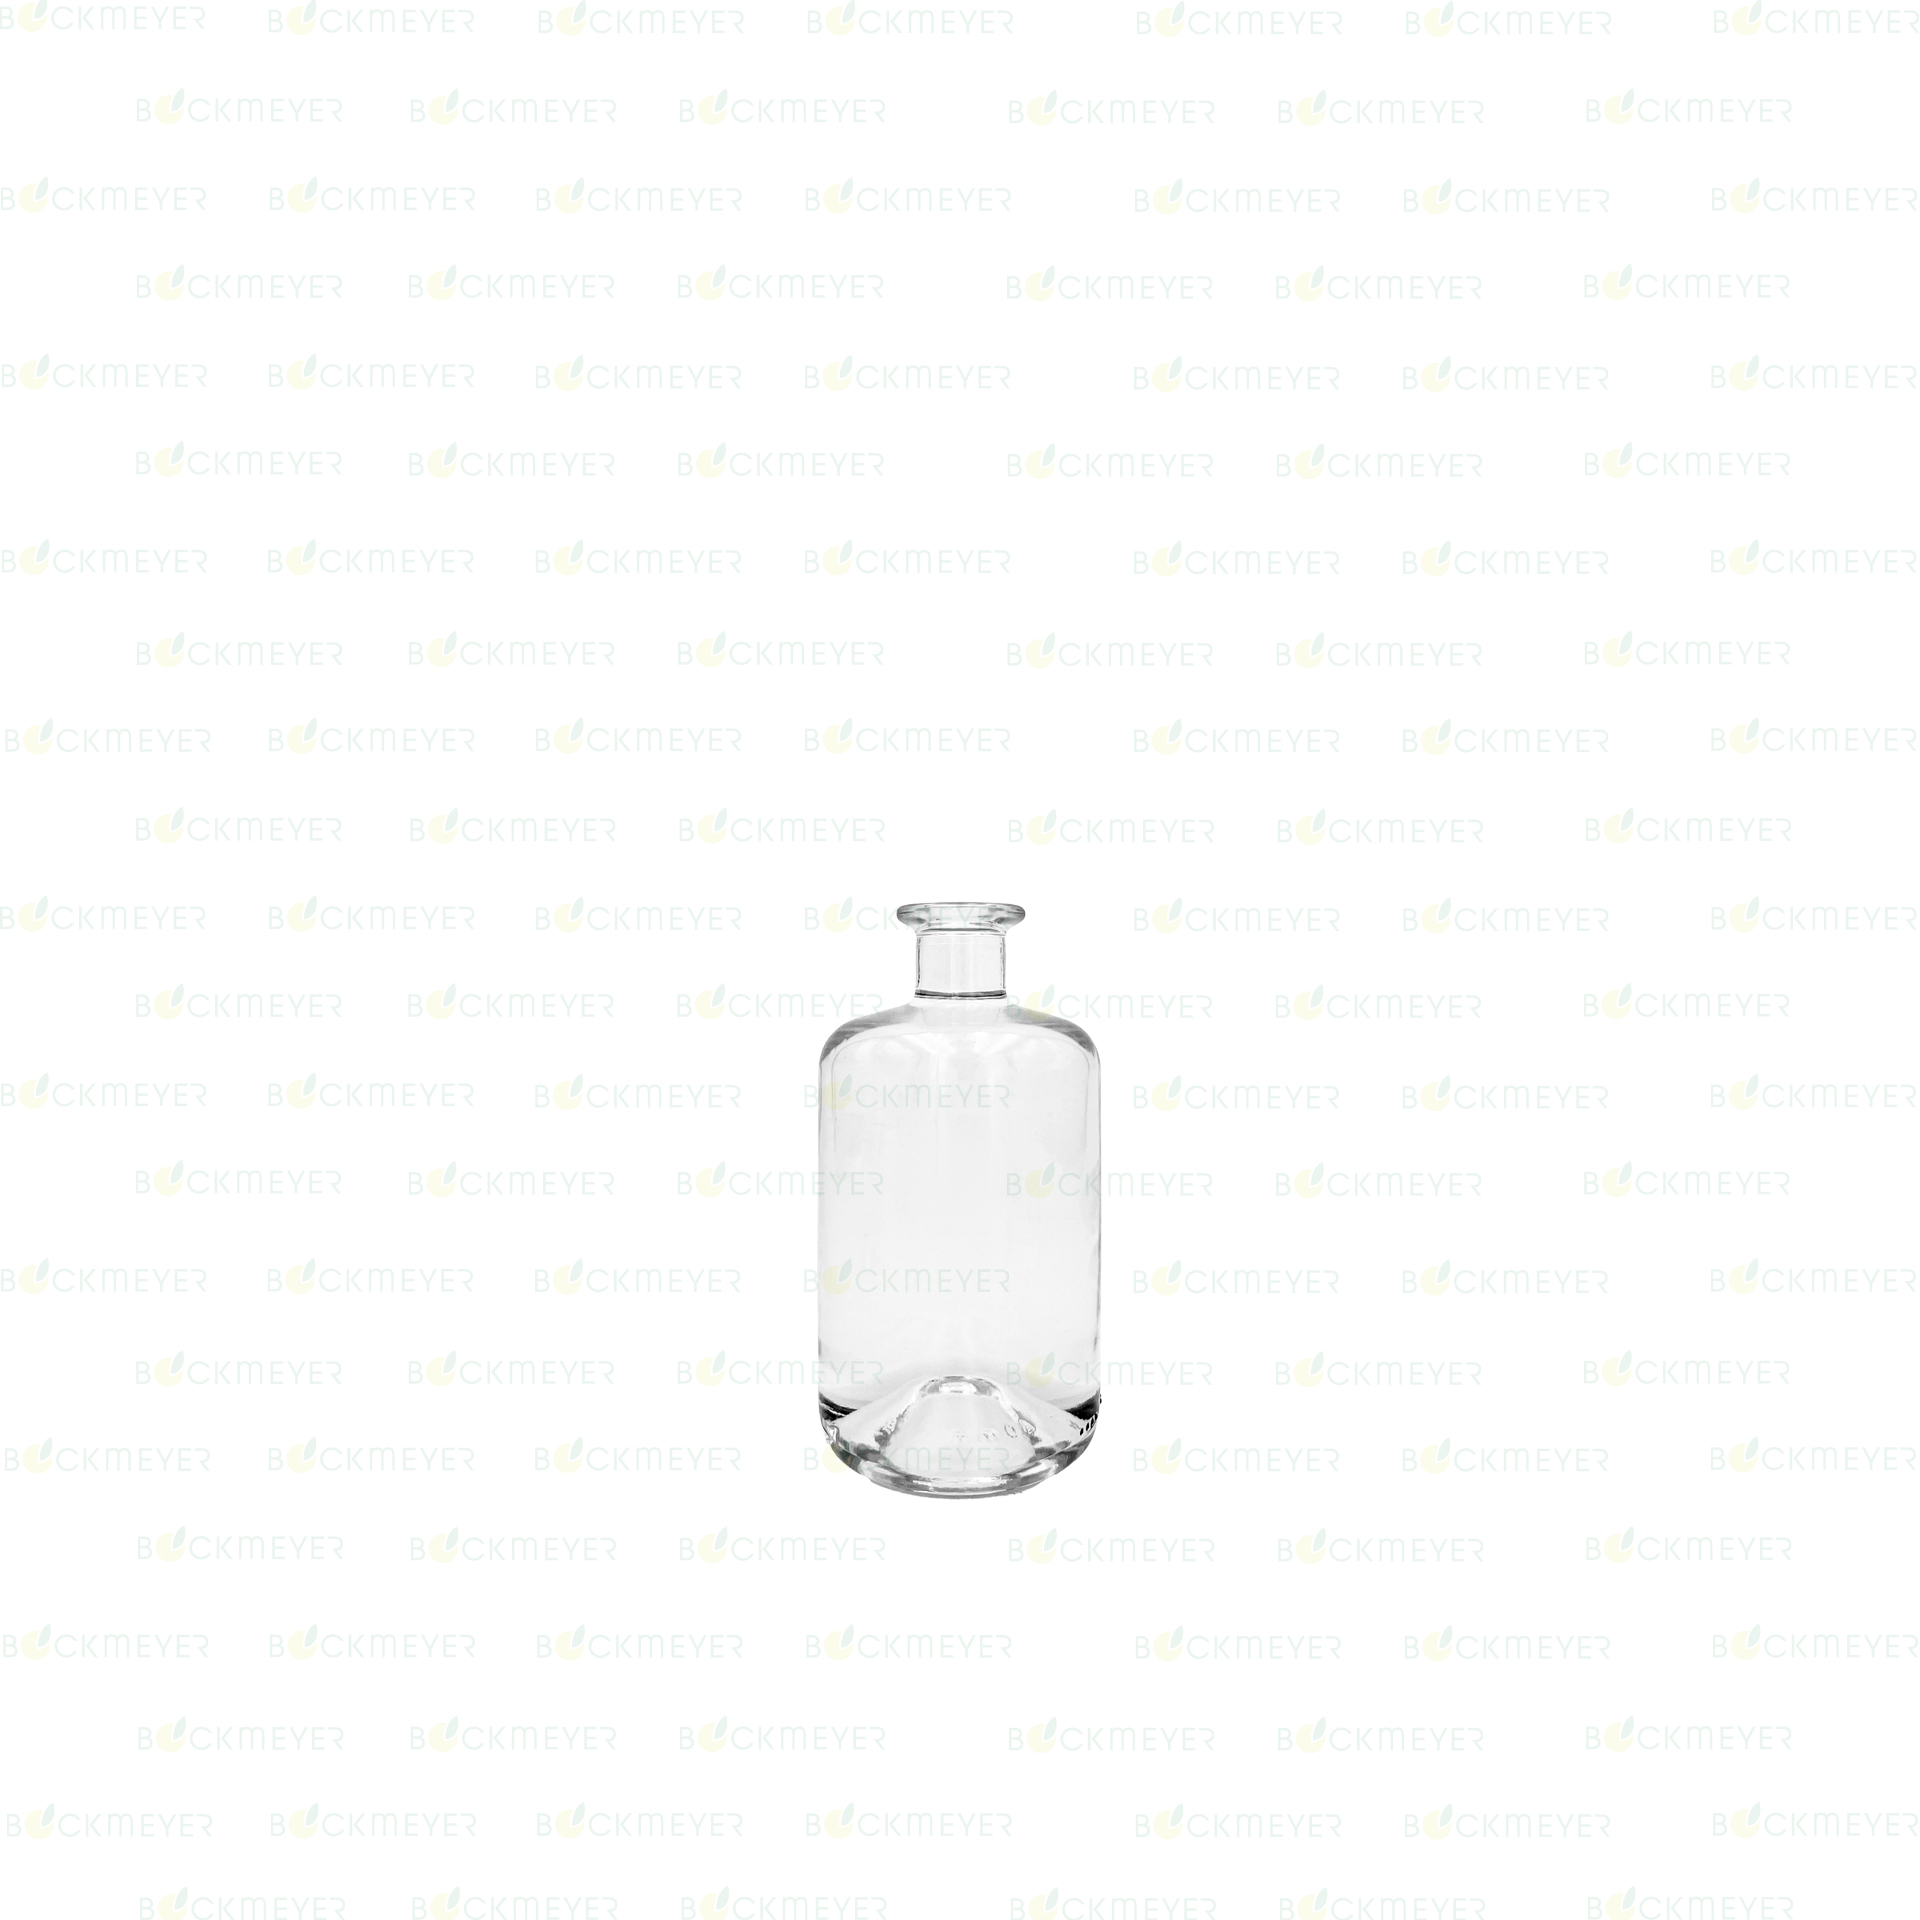 Apothekerflasche 0,5 Liter, weiß (OHNE VERSCHLUSS)